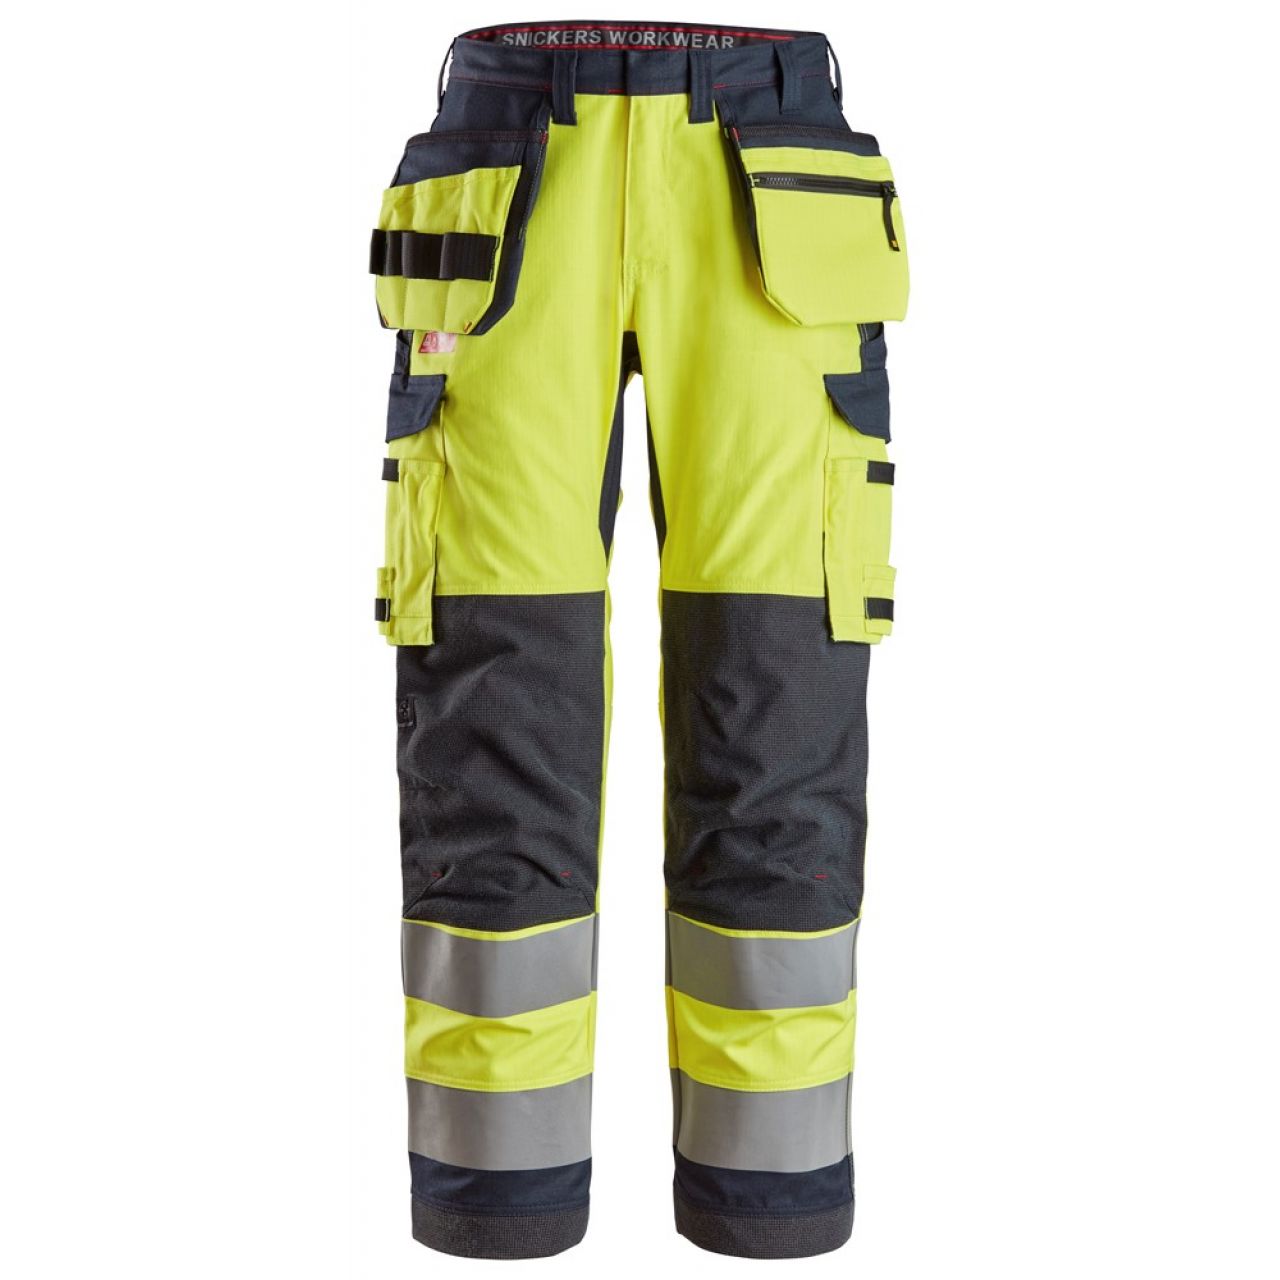 6261 Pantalones largos de trabajo de alta visibilidad clase 2 con bolsillos flotantes simétricos ProtecWork amarillo-azul marino talla 154